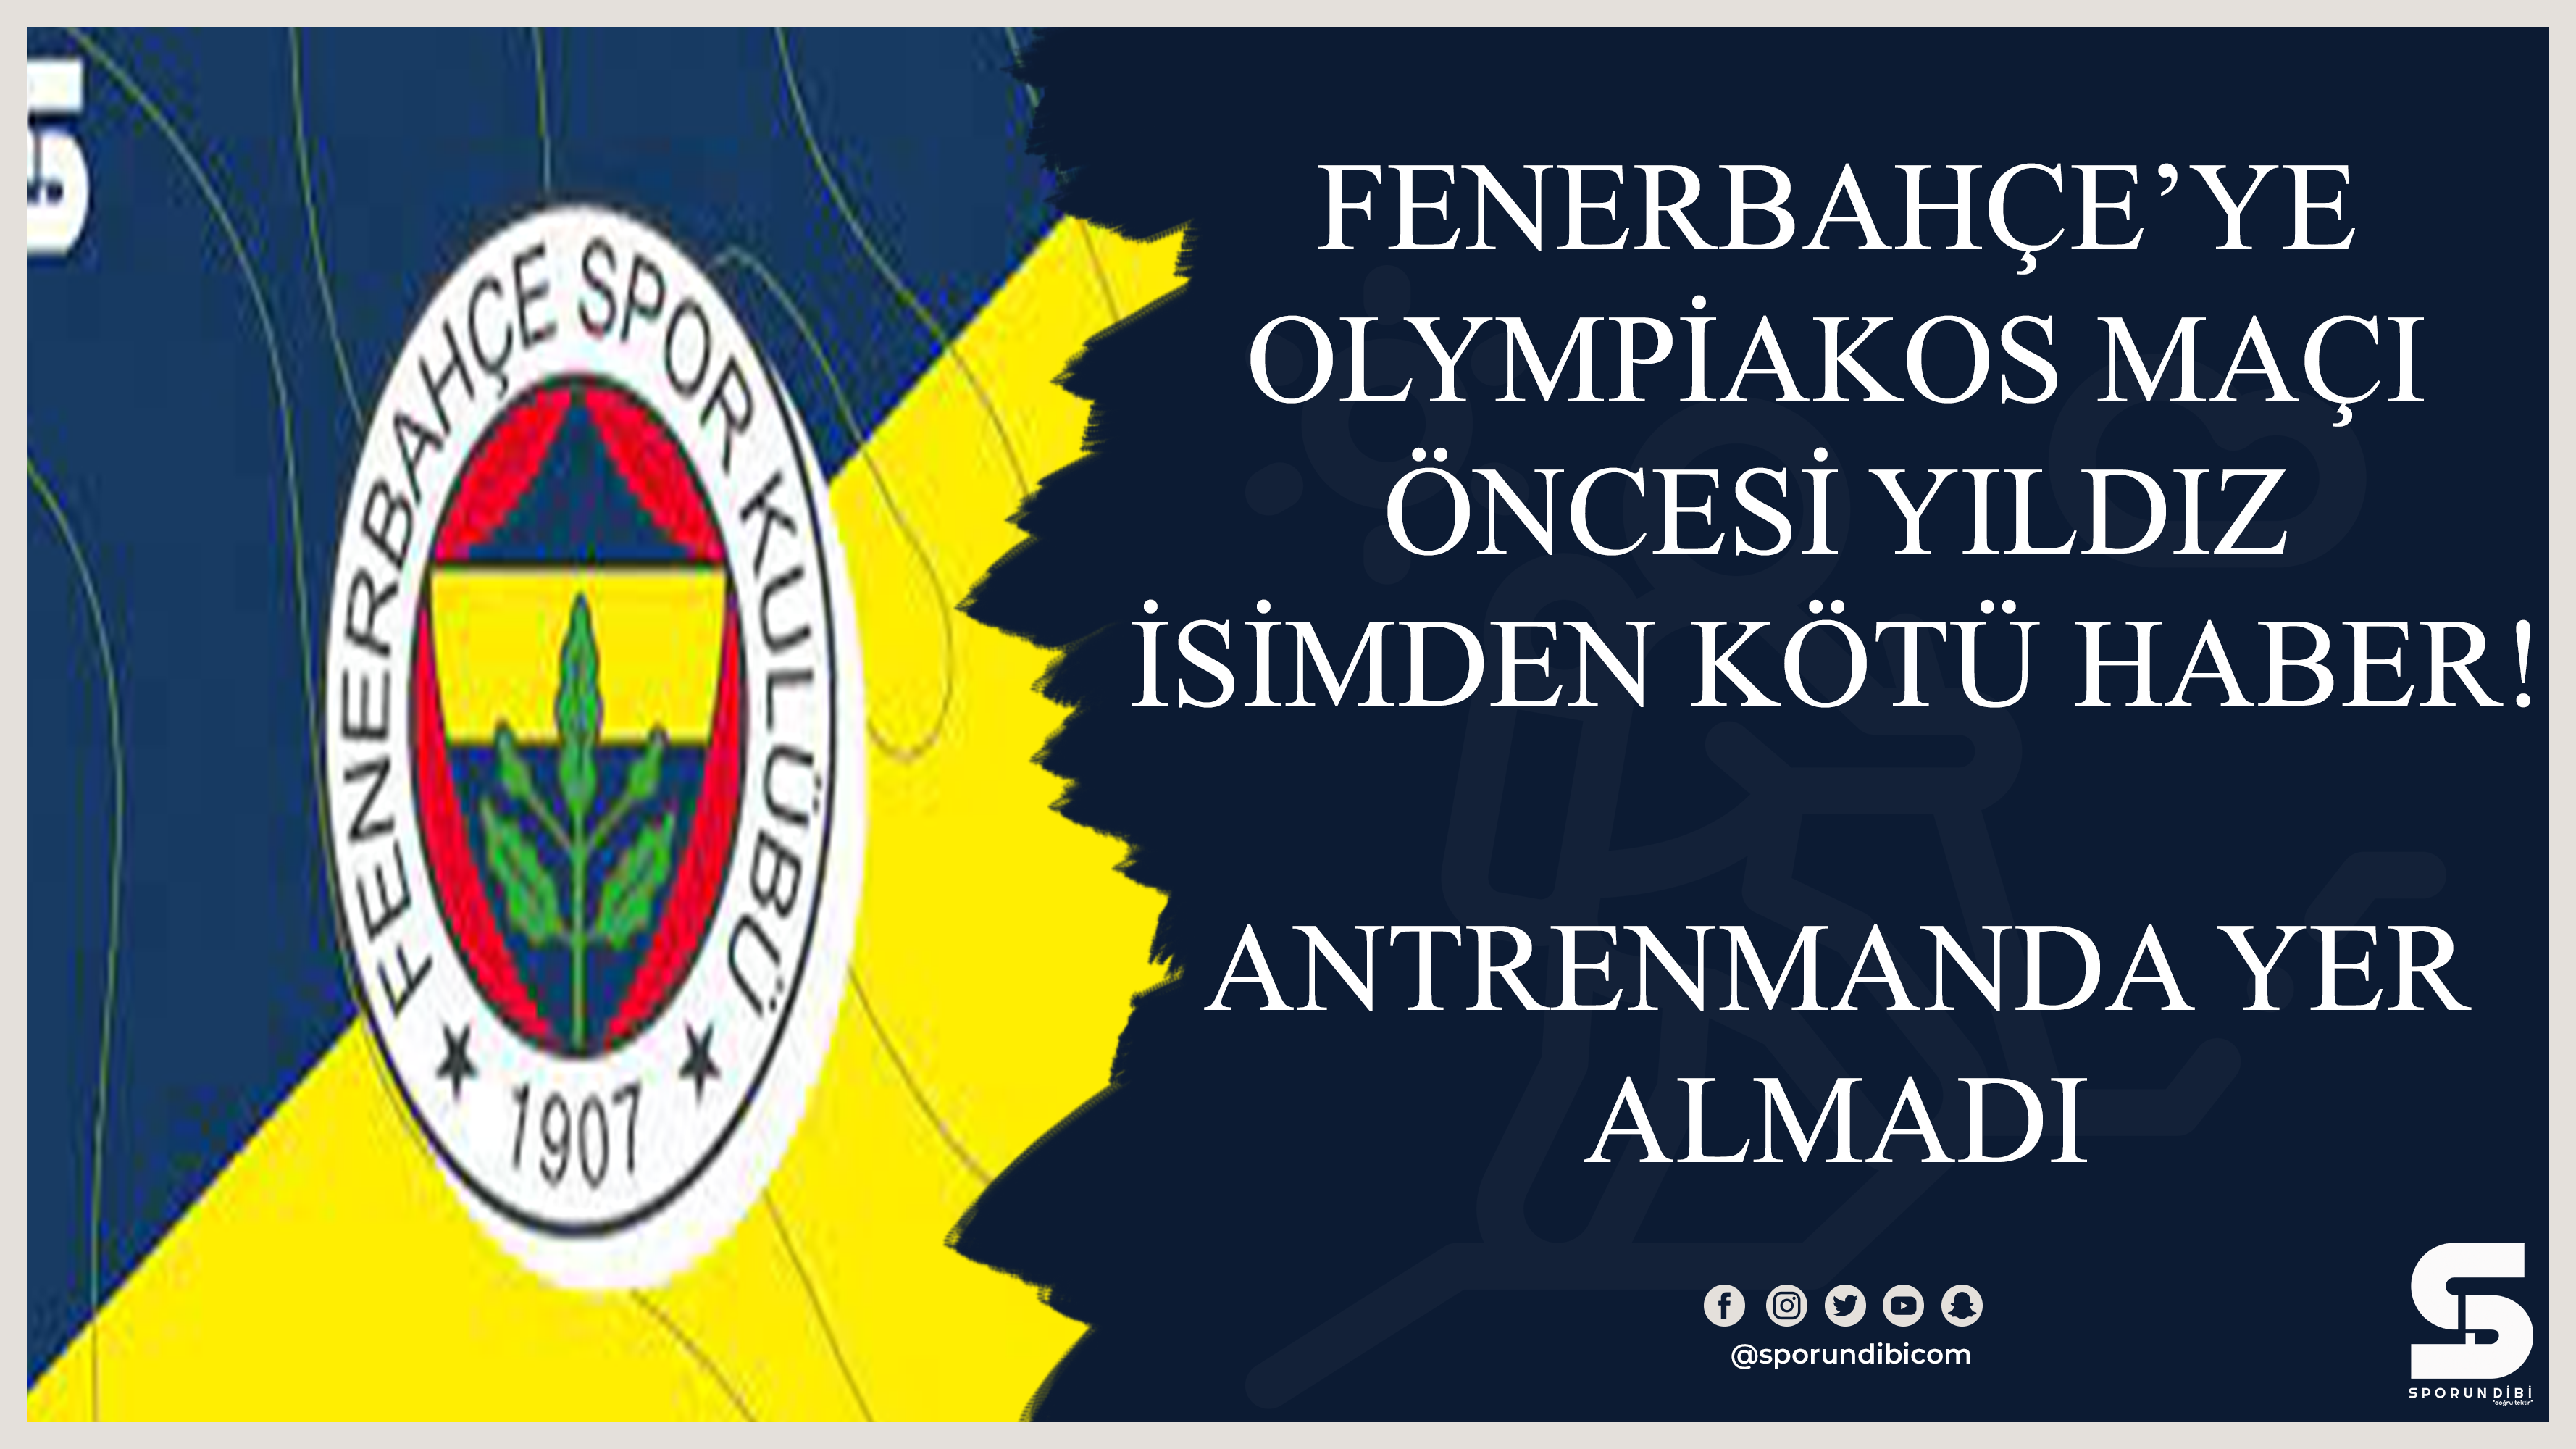 Fenerbahçe'ye Olympiakos maçı öncesi yıldız isimden kötü haber! Antrenmanda yer almadı